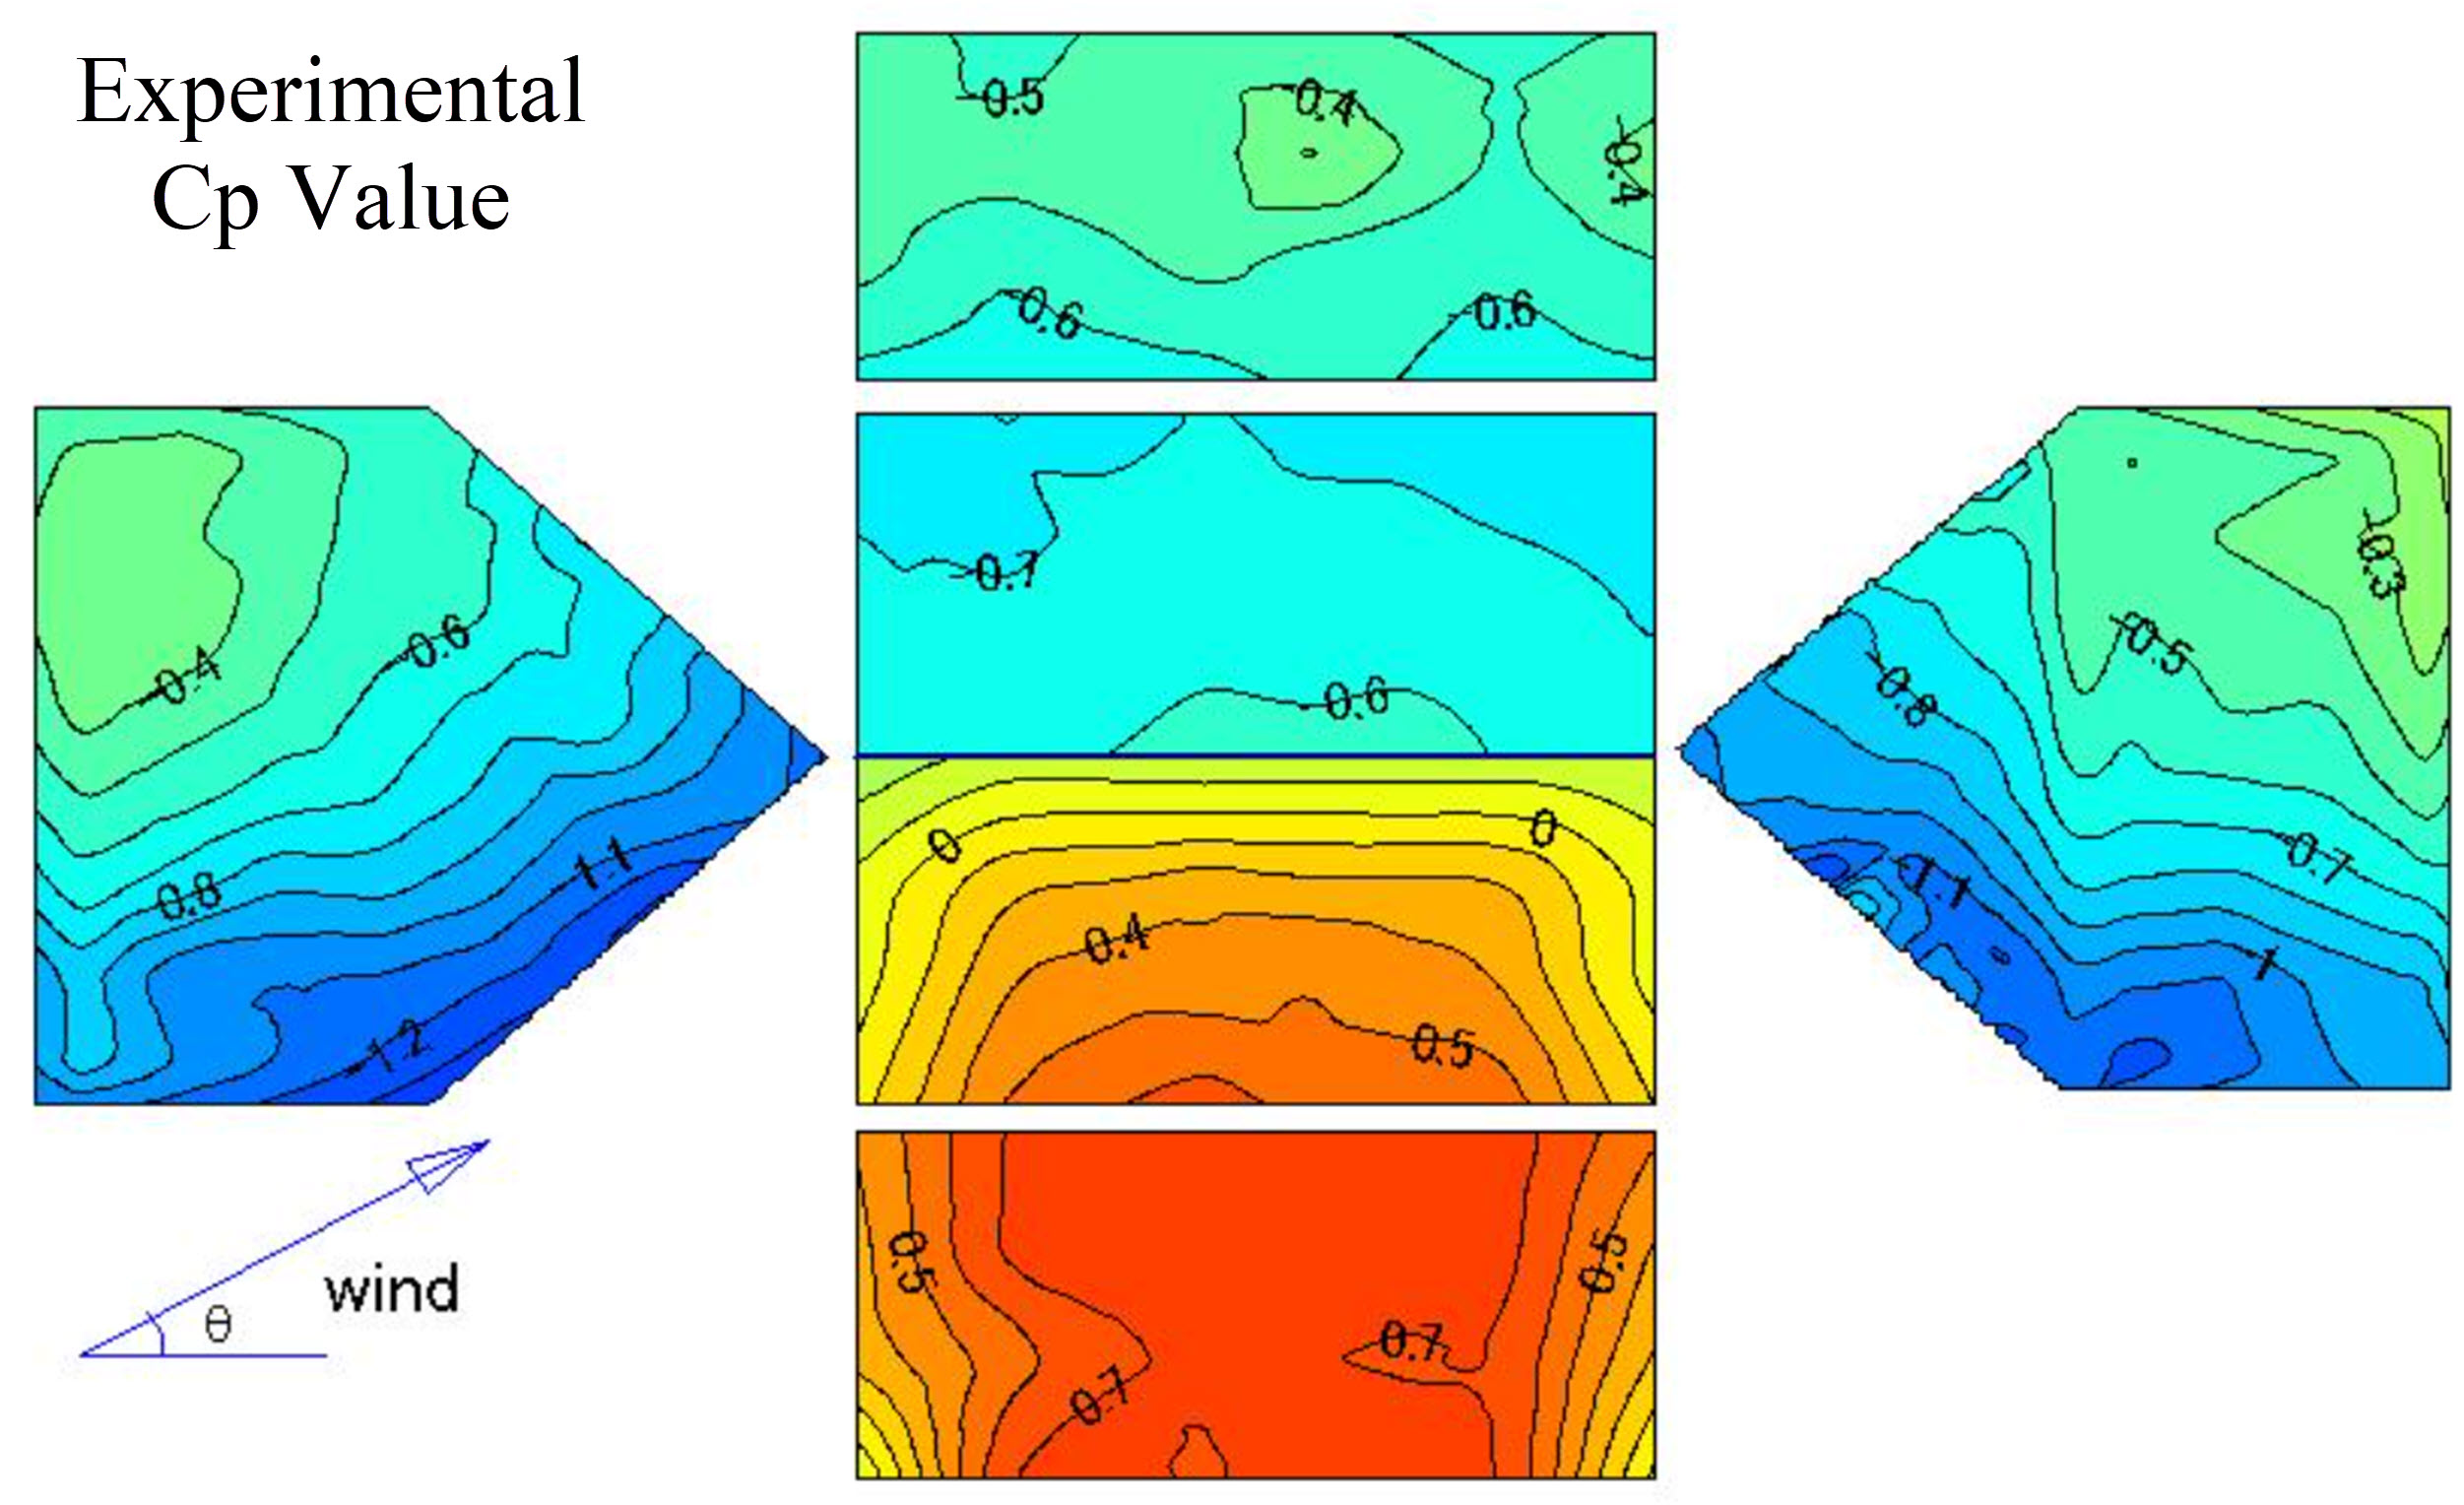 Bild 3: Experimenteller Cp-Wert basierend auf der japanischen Windkanal-Datenbank